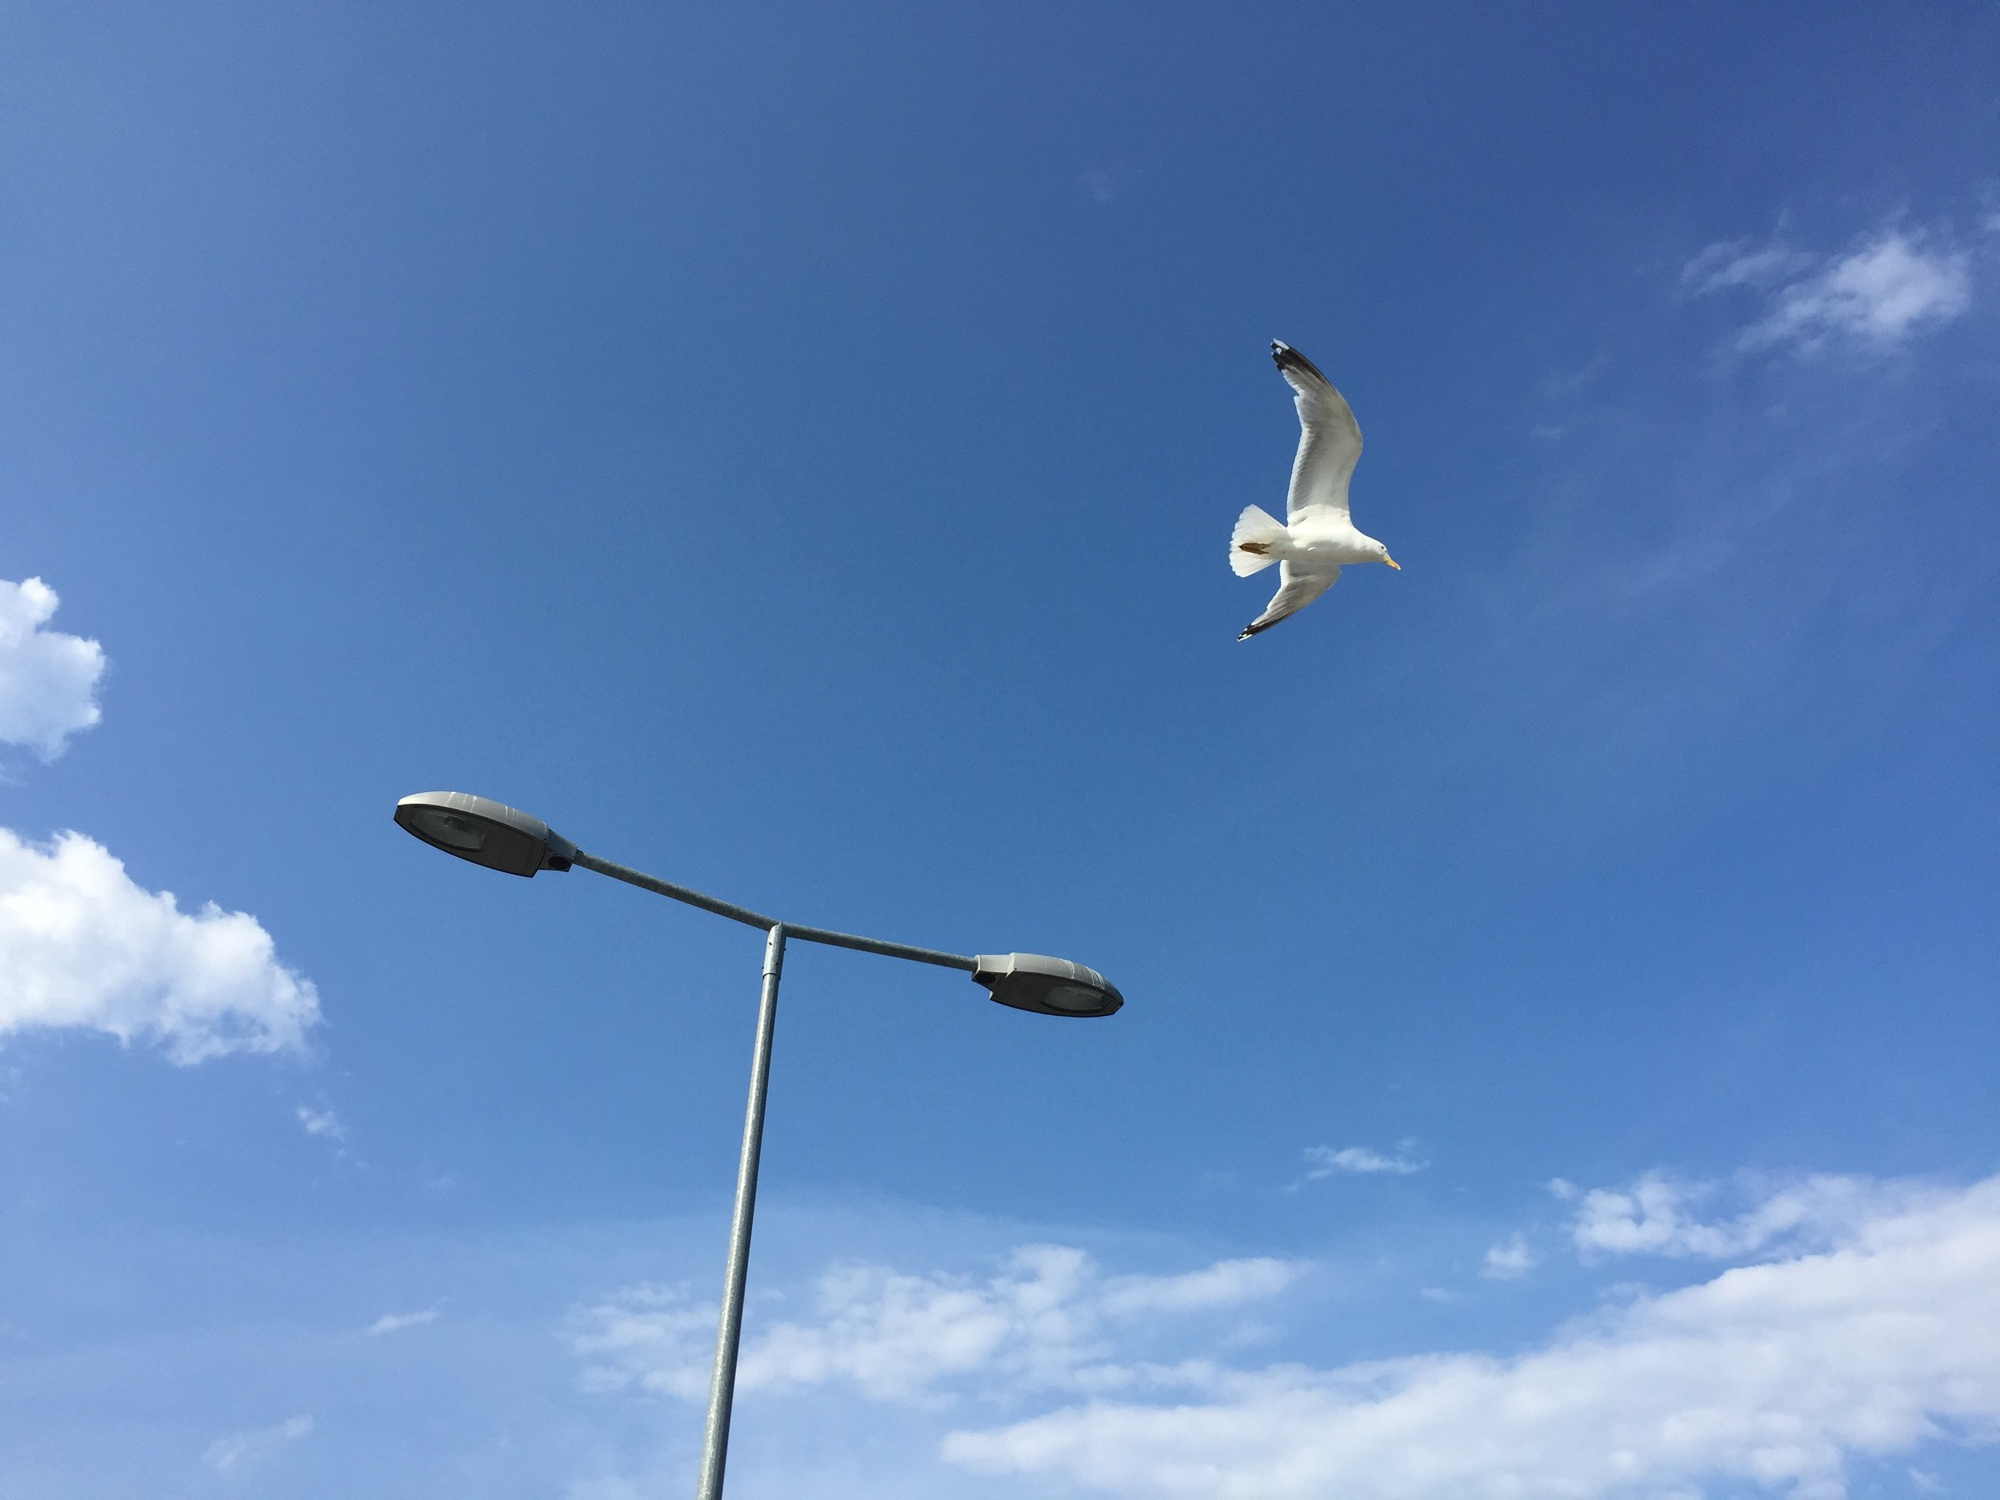 Blick vom Pier nach oben, neben einer zweiarmigen Laterne fliegt mit ausgebreiteten Flügeln eine Möwe vorbei, ansonsten nur leicht bewölkter, blauer Himmel